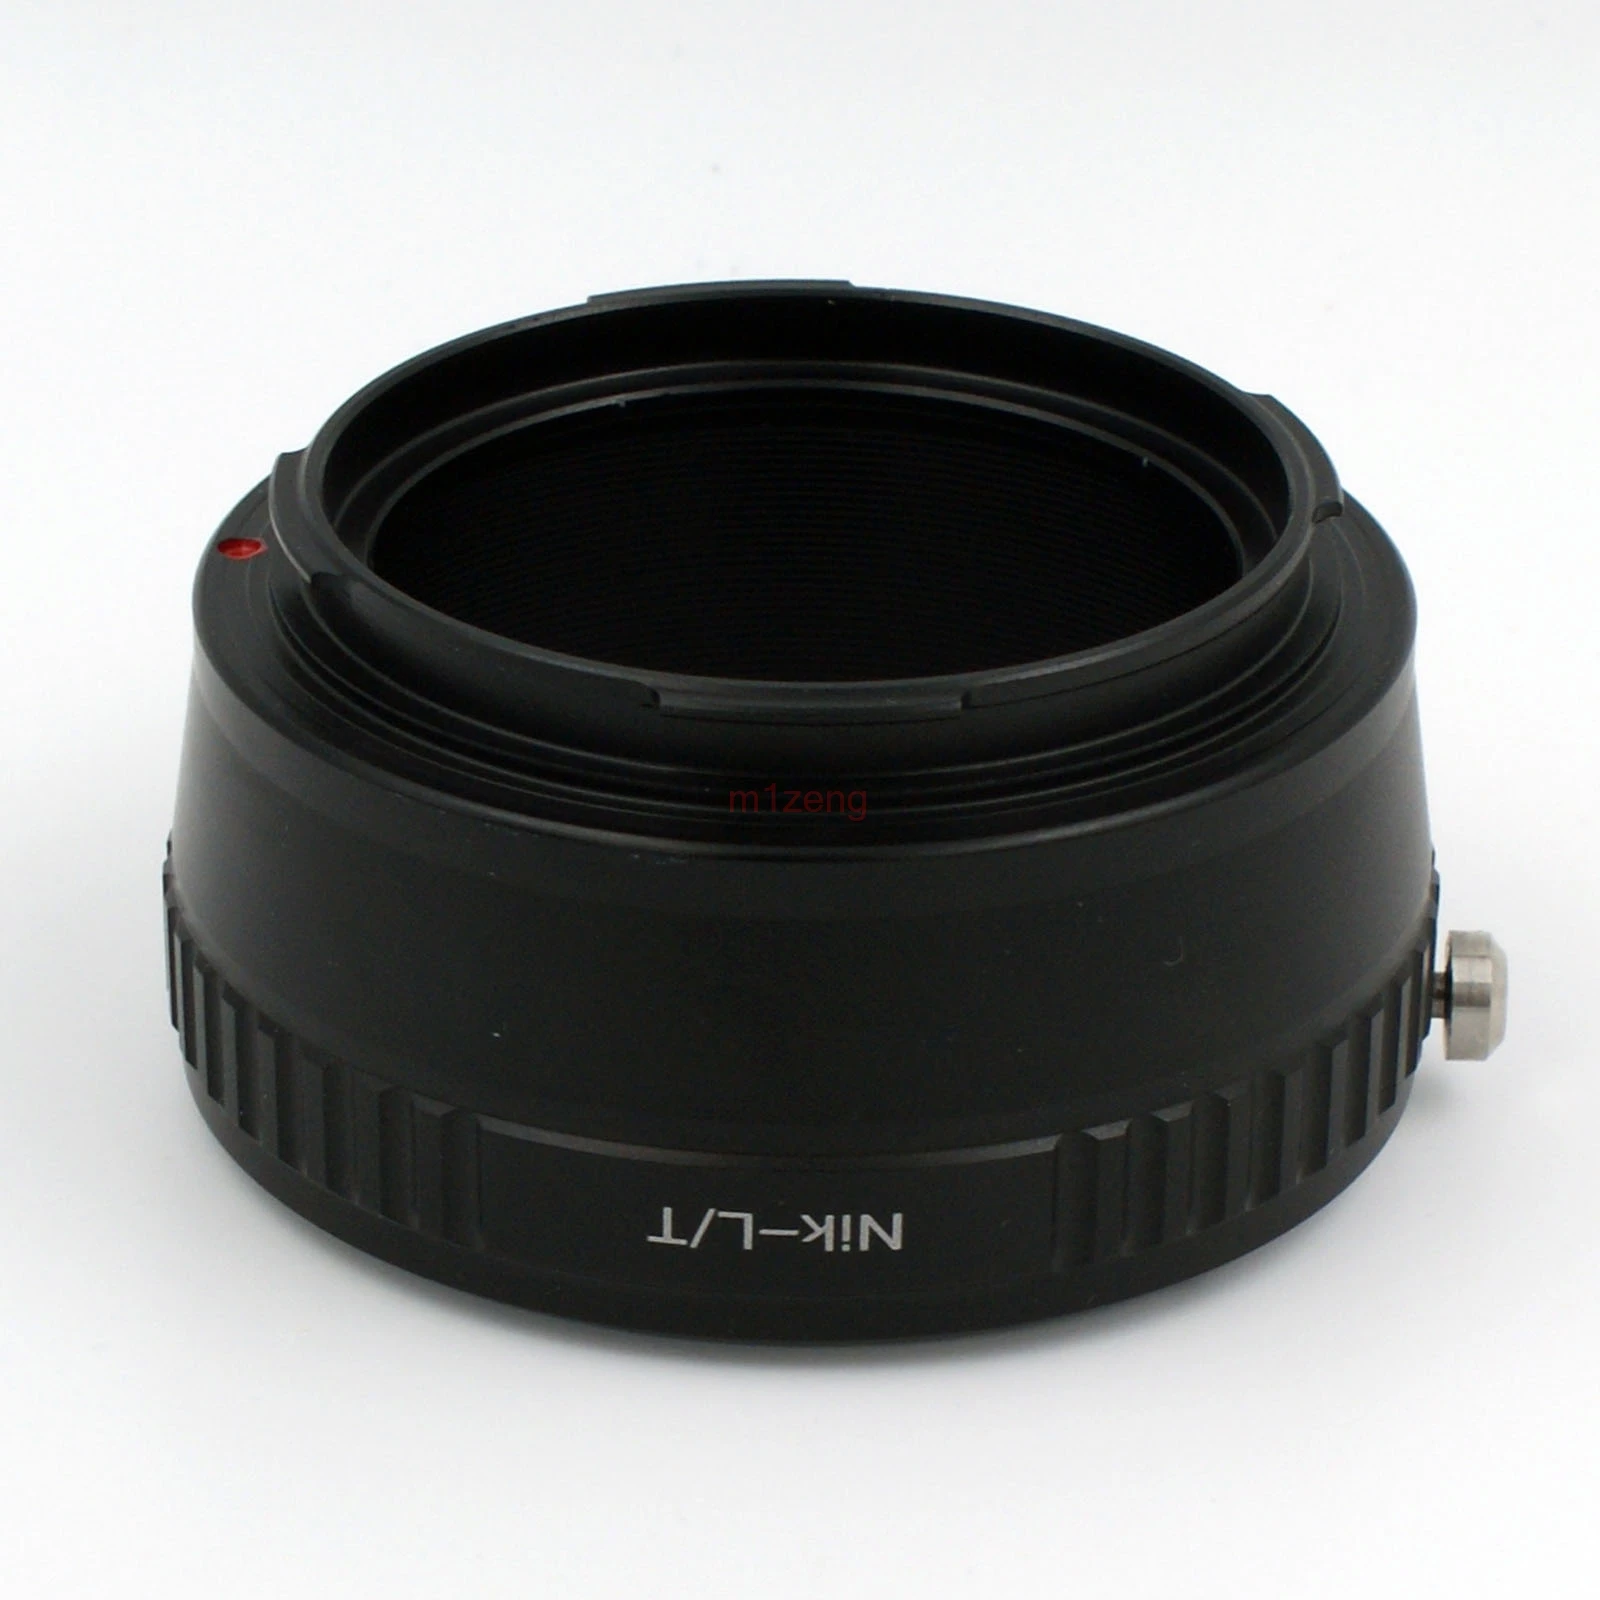 AI-LT переходное кольцо для объектива nikon AI F объектив для камеры Leica T LT TL TL2 Typ 701 Typ701 18146 18147 18187